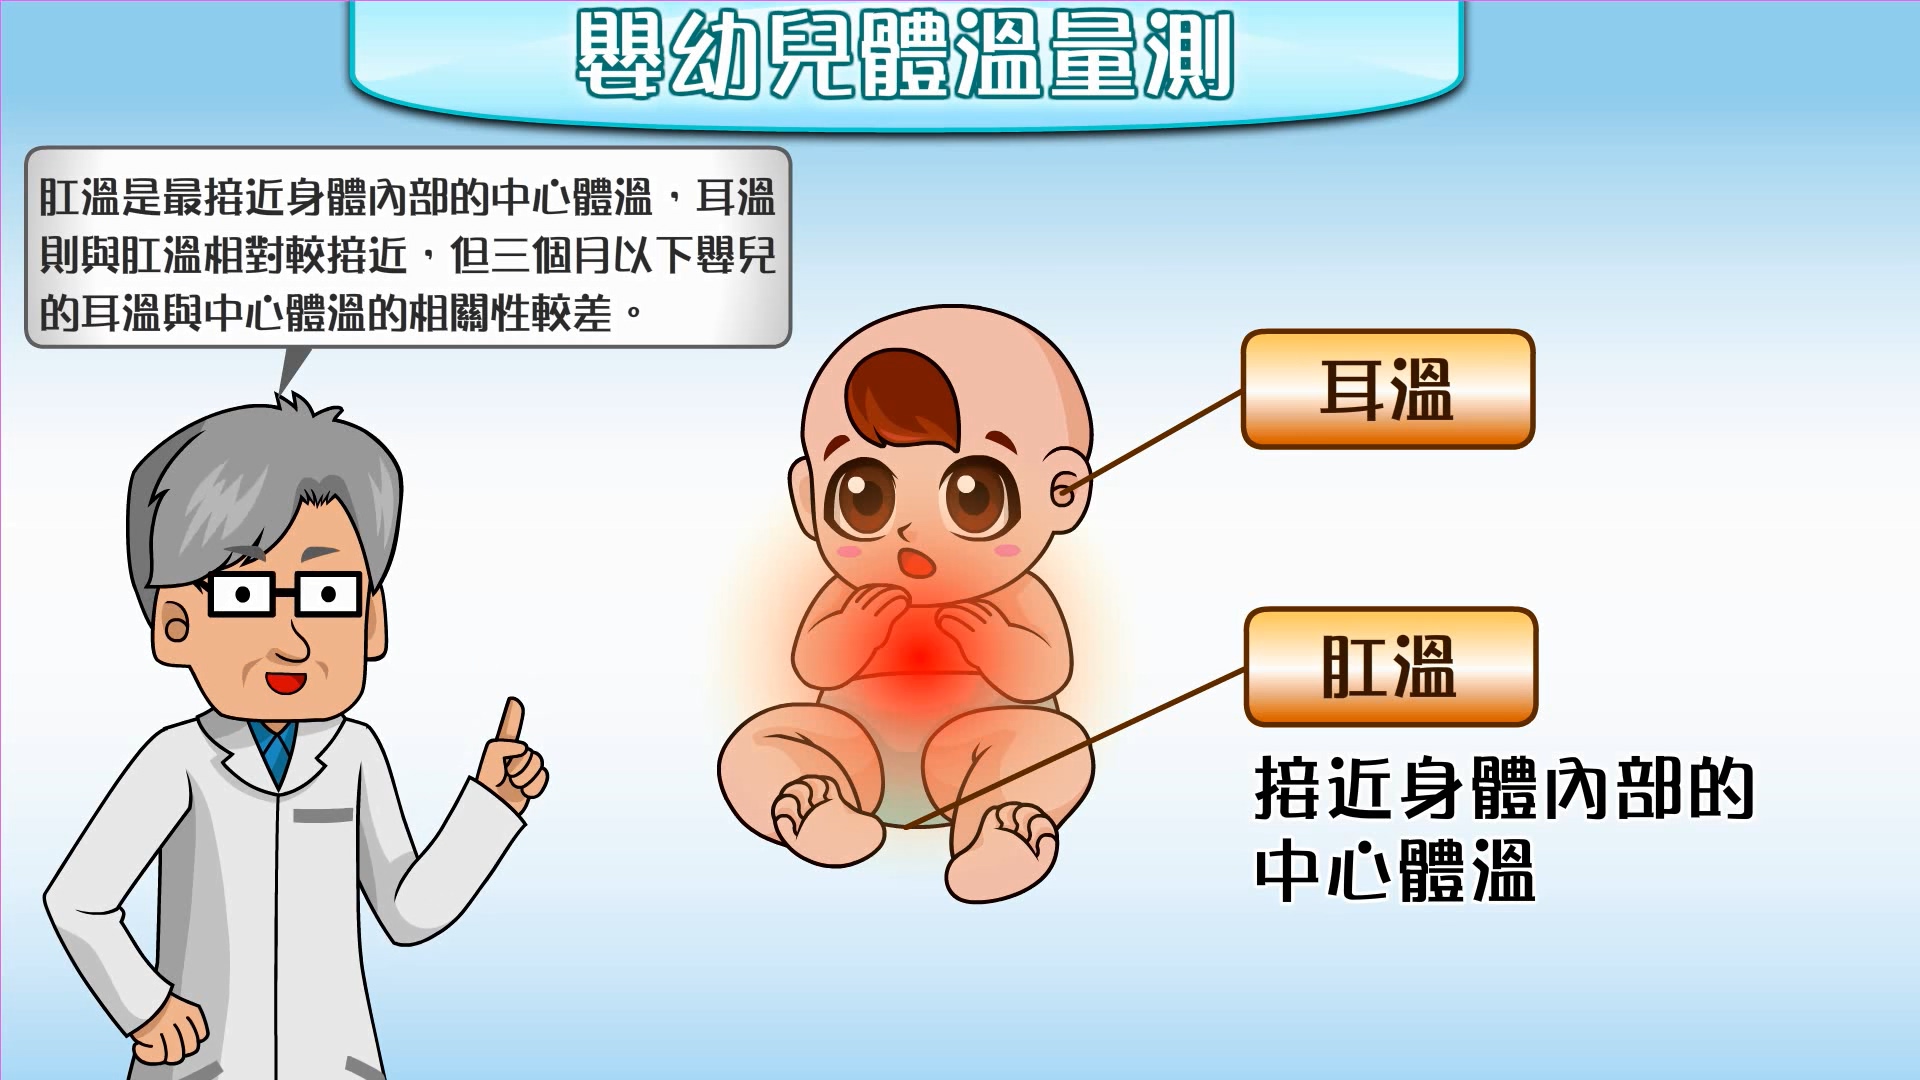 嬰幼兒健康照護衛教動畫_02_寶寶發燒了_家長版文章照片